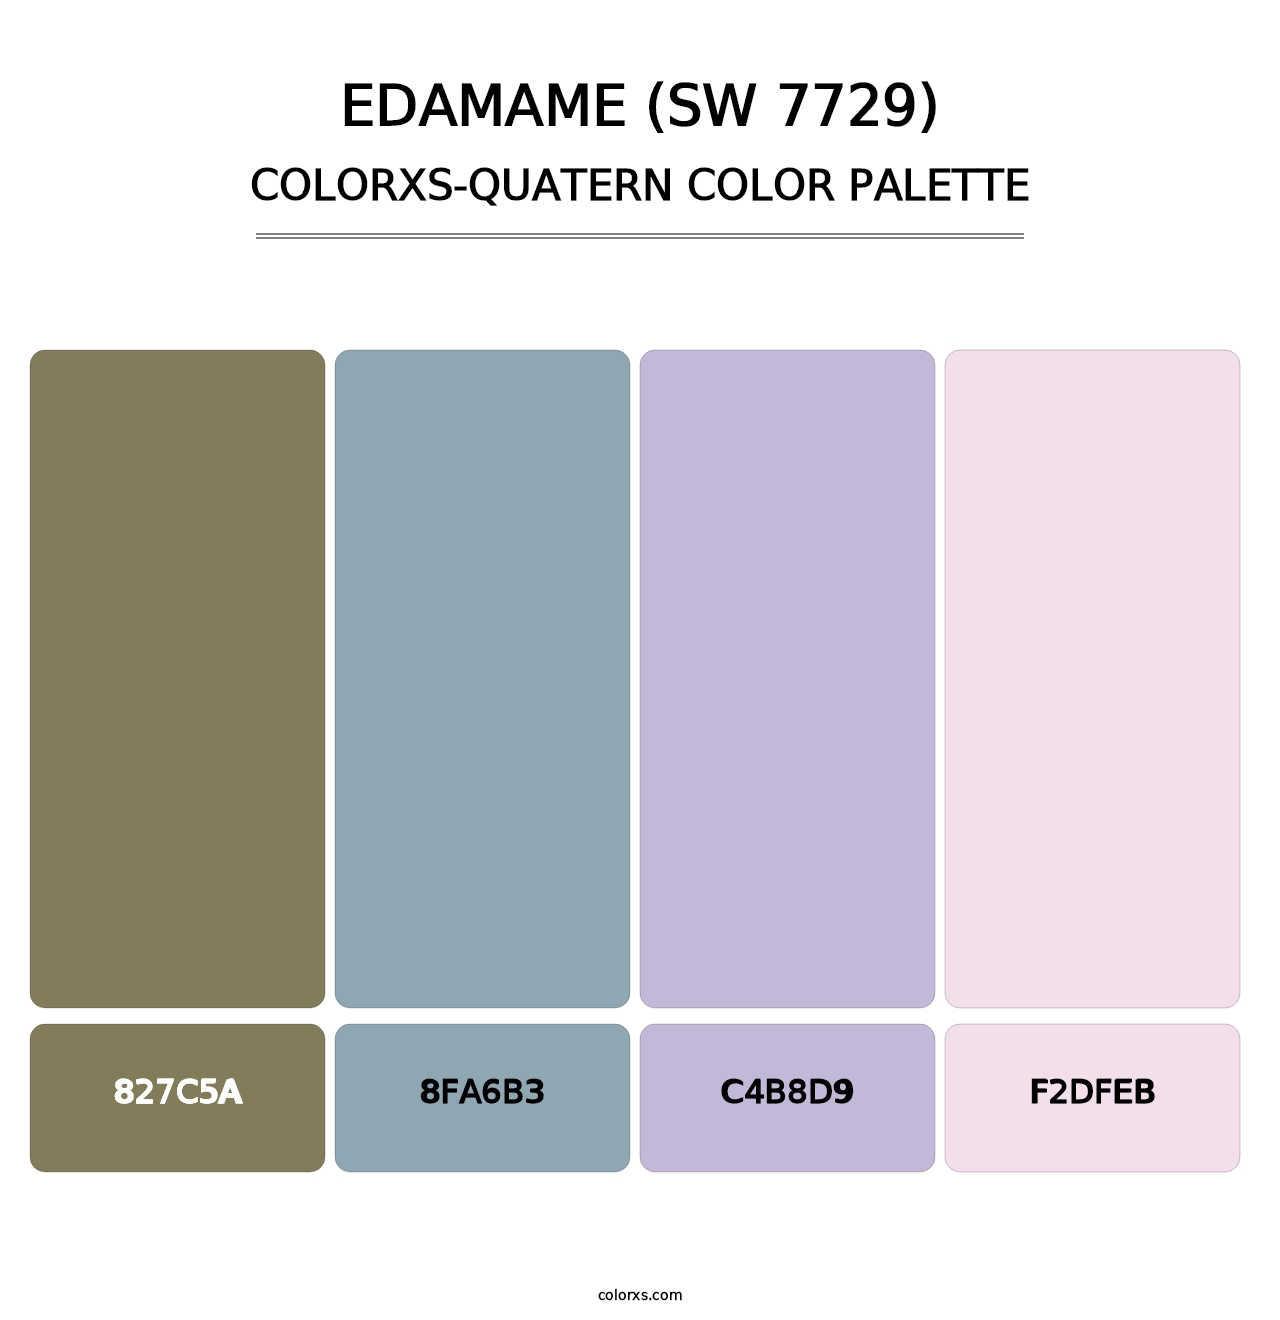 Edamame (SW 7729) - Colorxs Quatern Palette